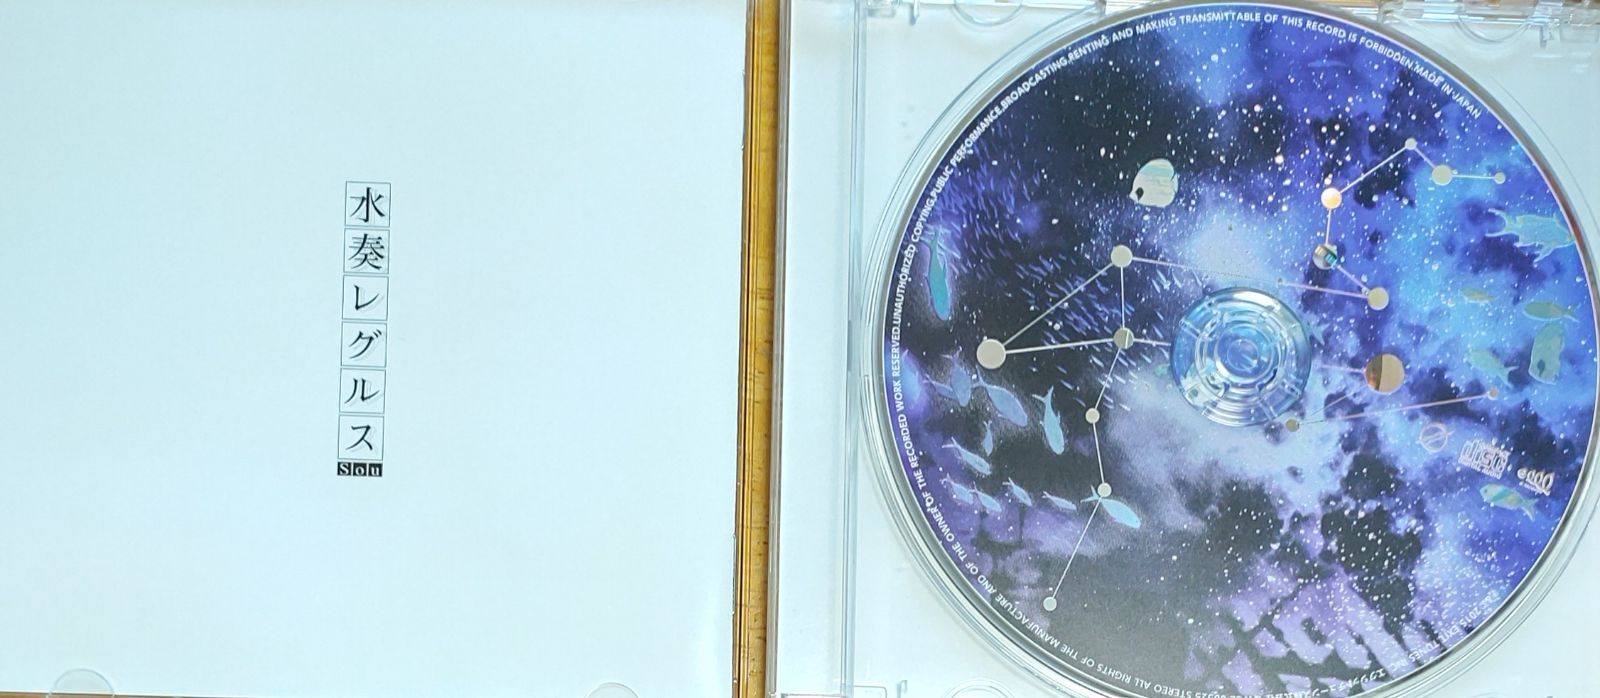 水奏レグルス / Ｓｏｕ - MANYSUNAO CD SHOP - メルカリ